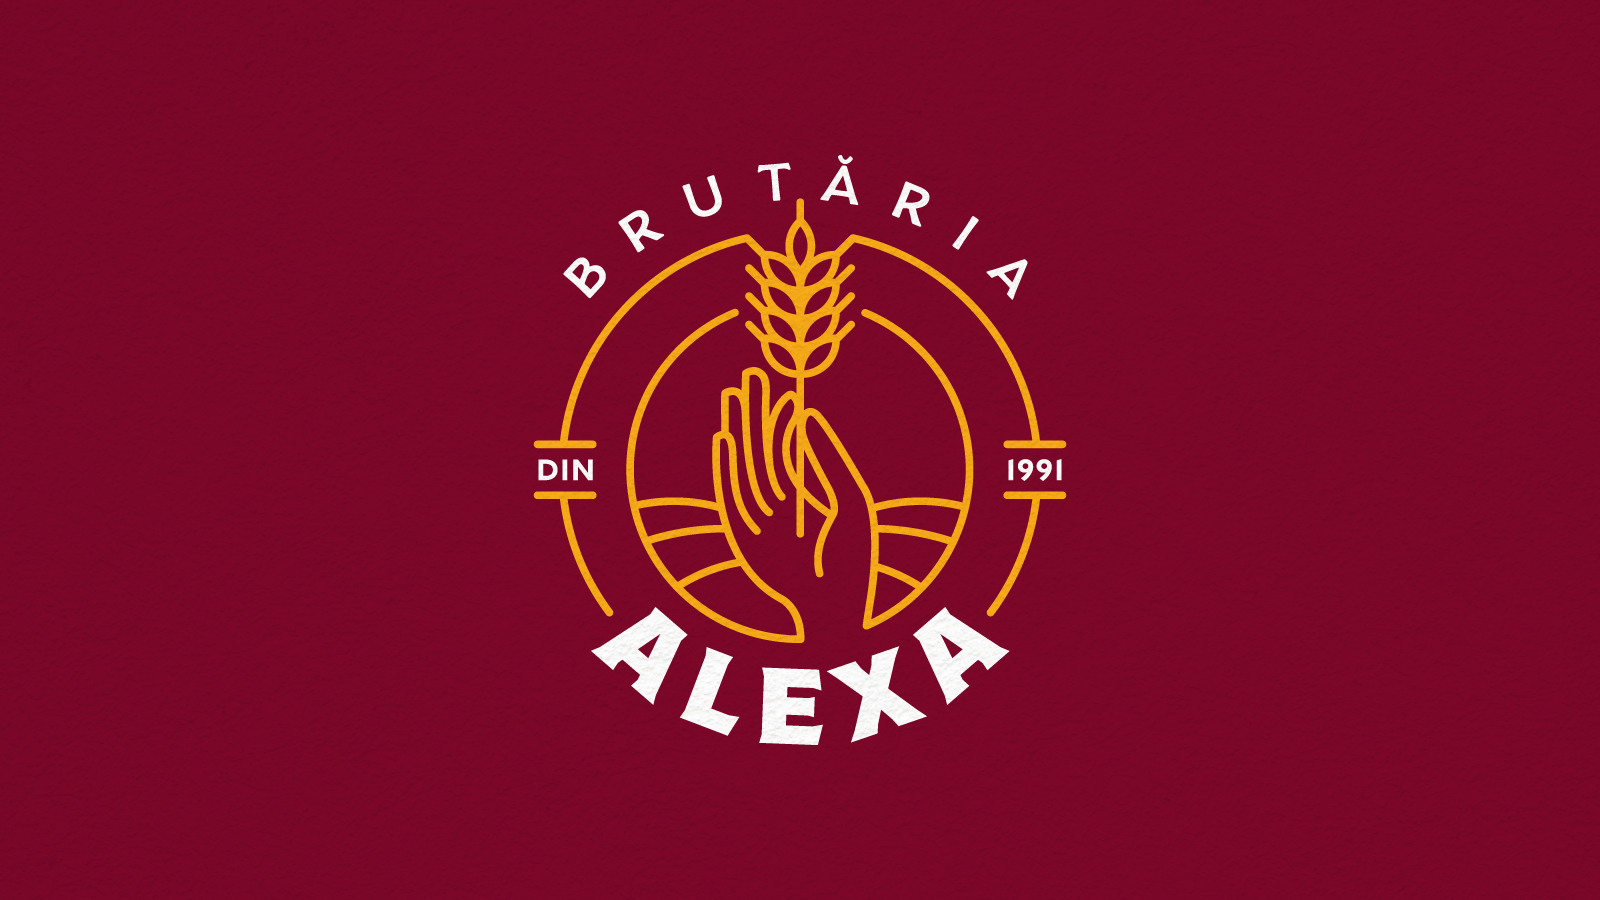 Brutaria Alexa - Logo Design